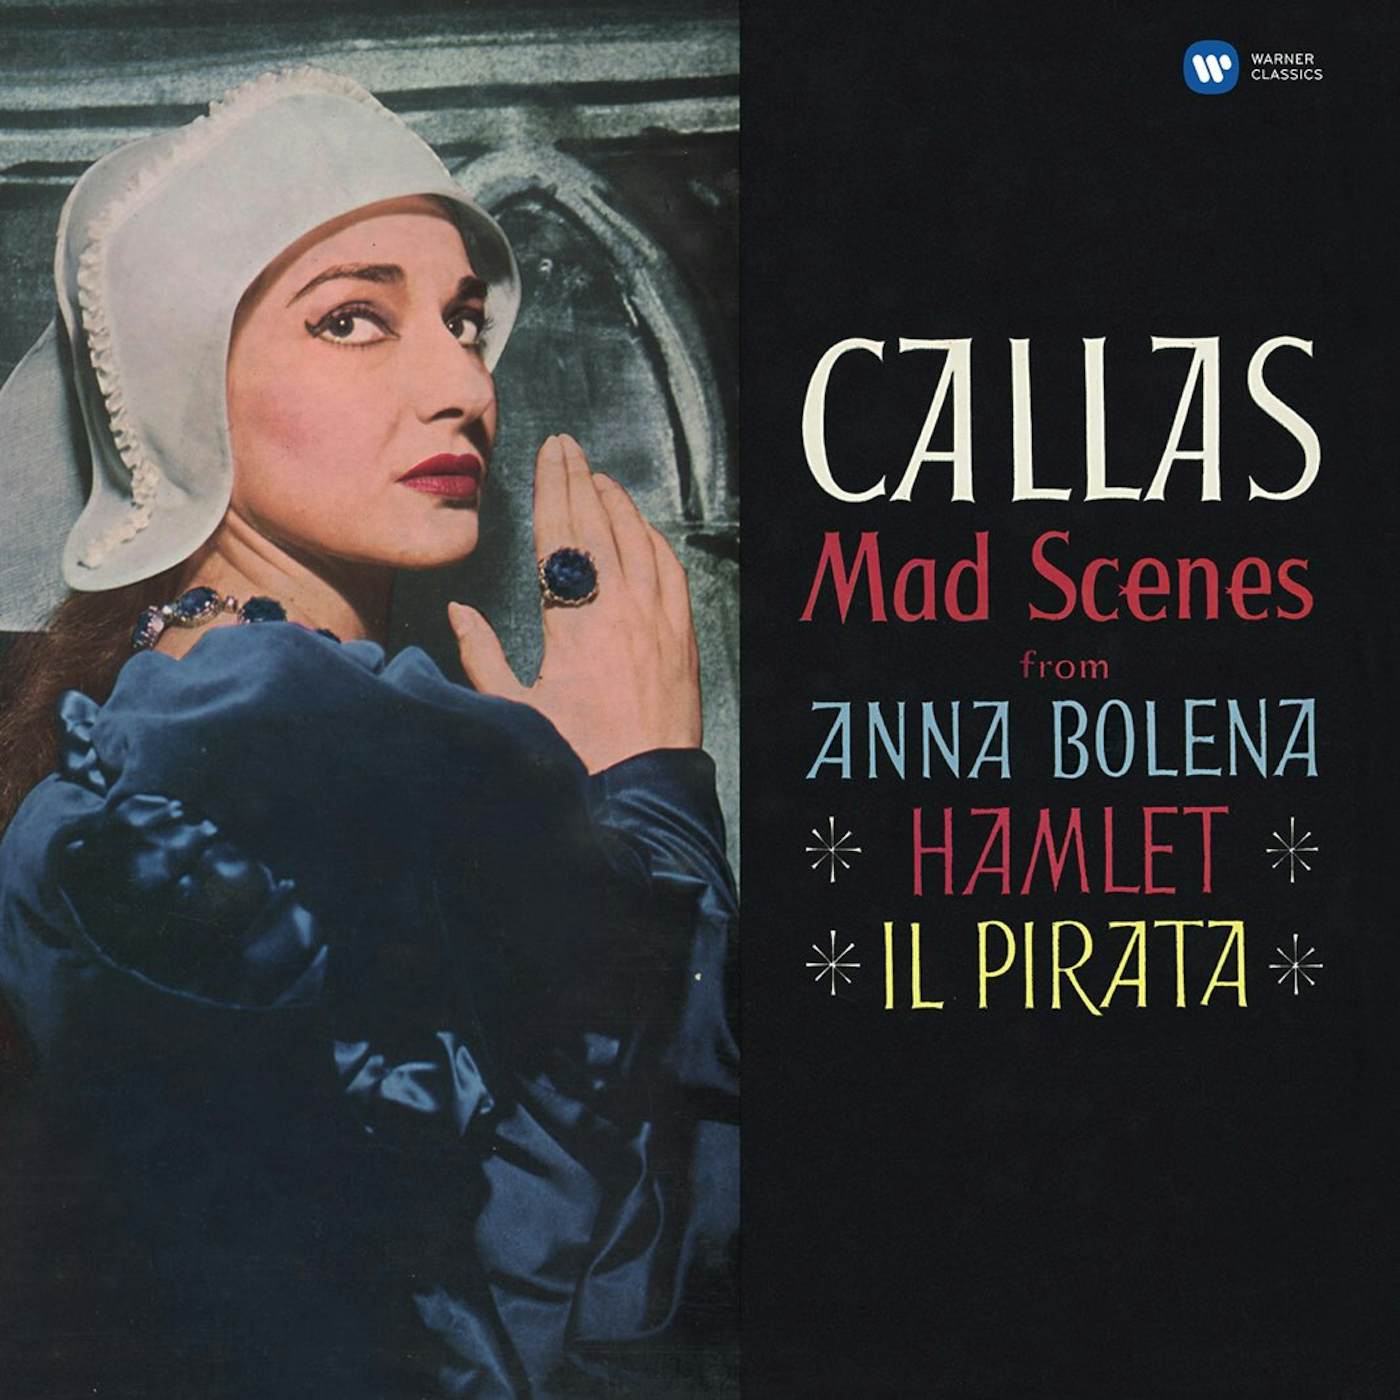 Maria Callas Mad Scenes Vinyl Record